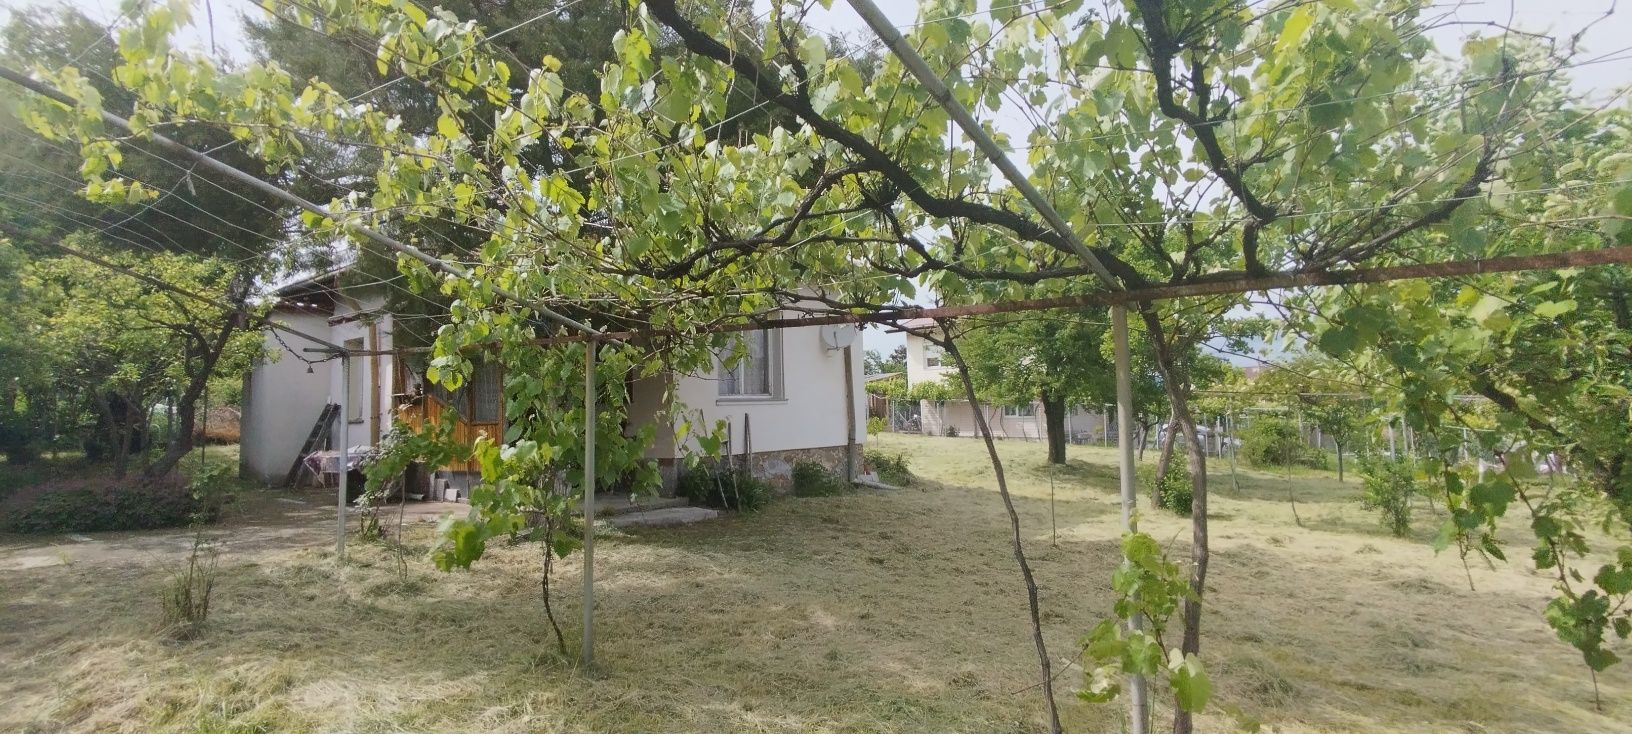 Продава се къща в центъра на село Чуковец, община Радомир